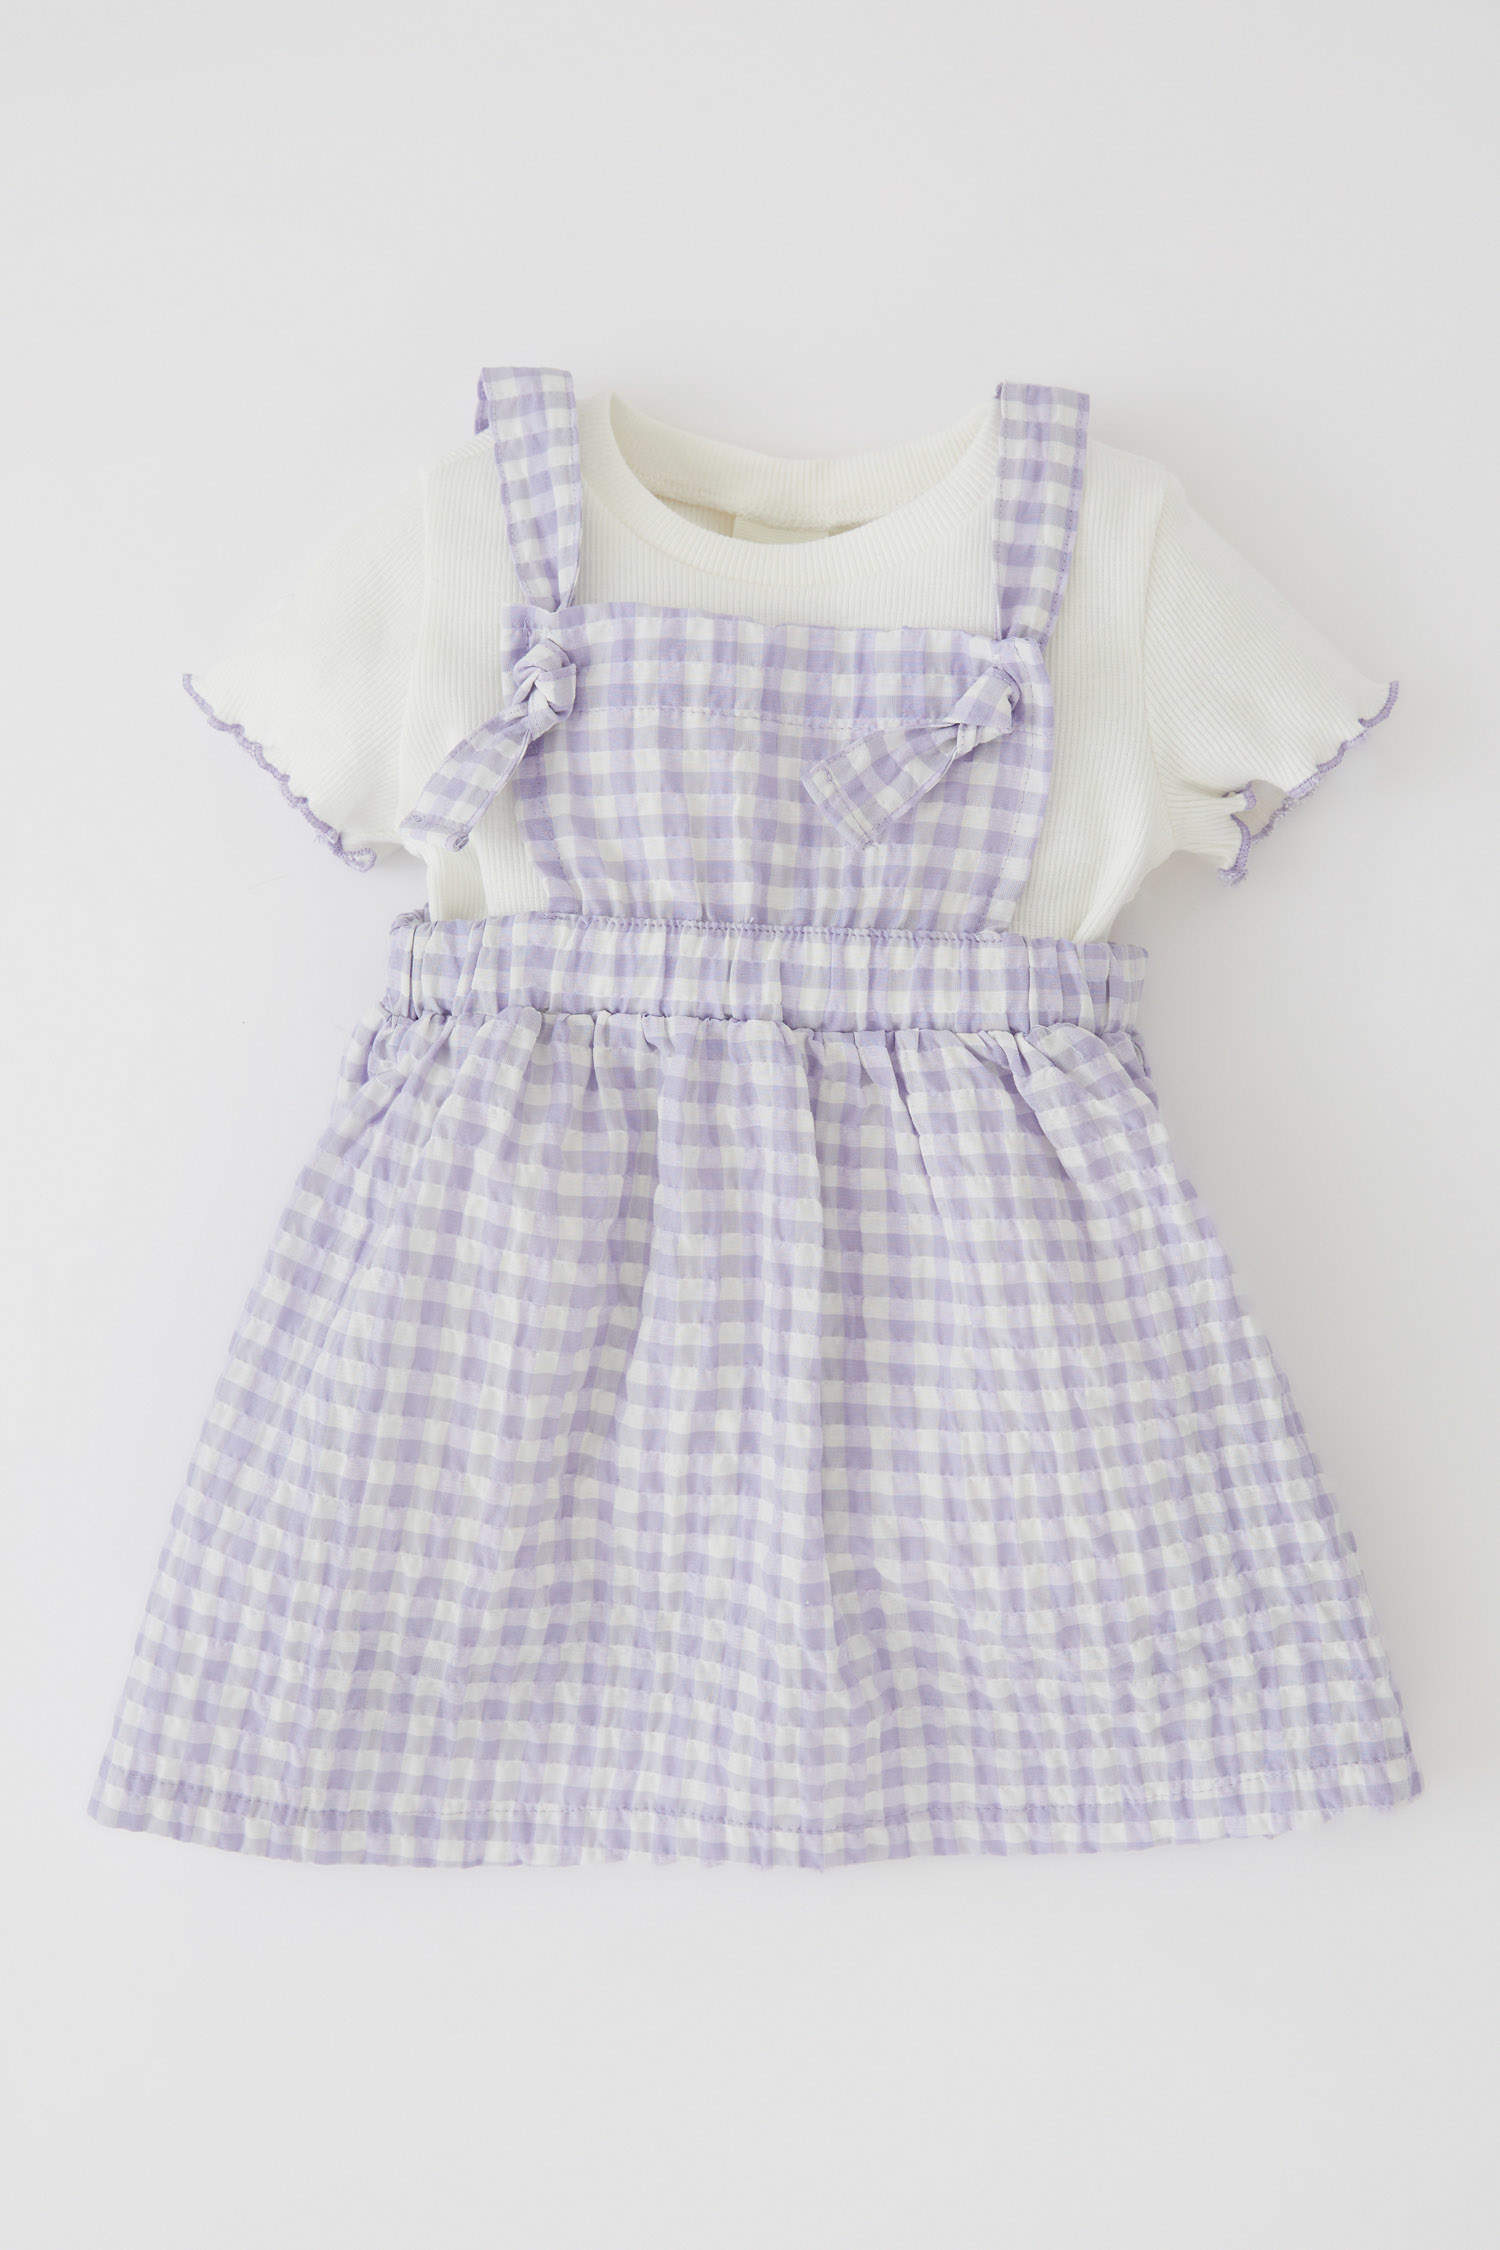 Defacto Kız Bebek Kısa Kollu Tişört Pötikare Desenli Askılı Elbise Takım. 3